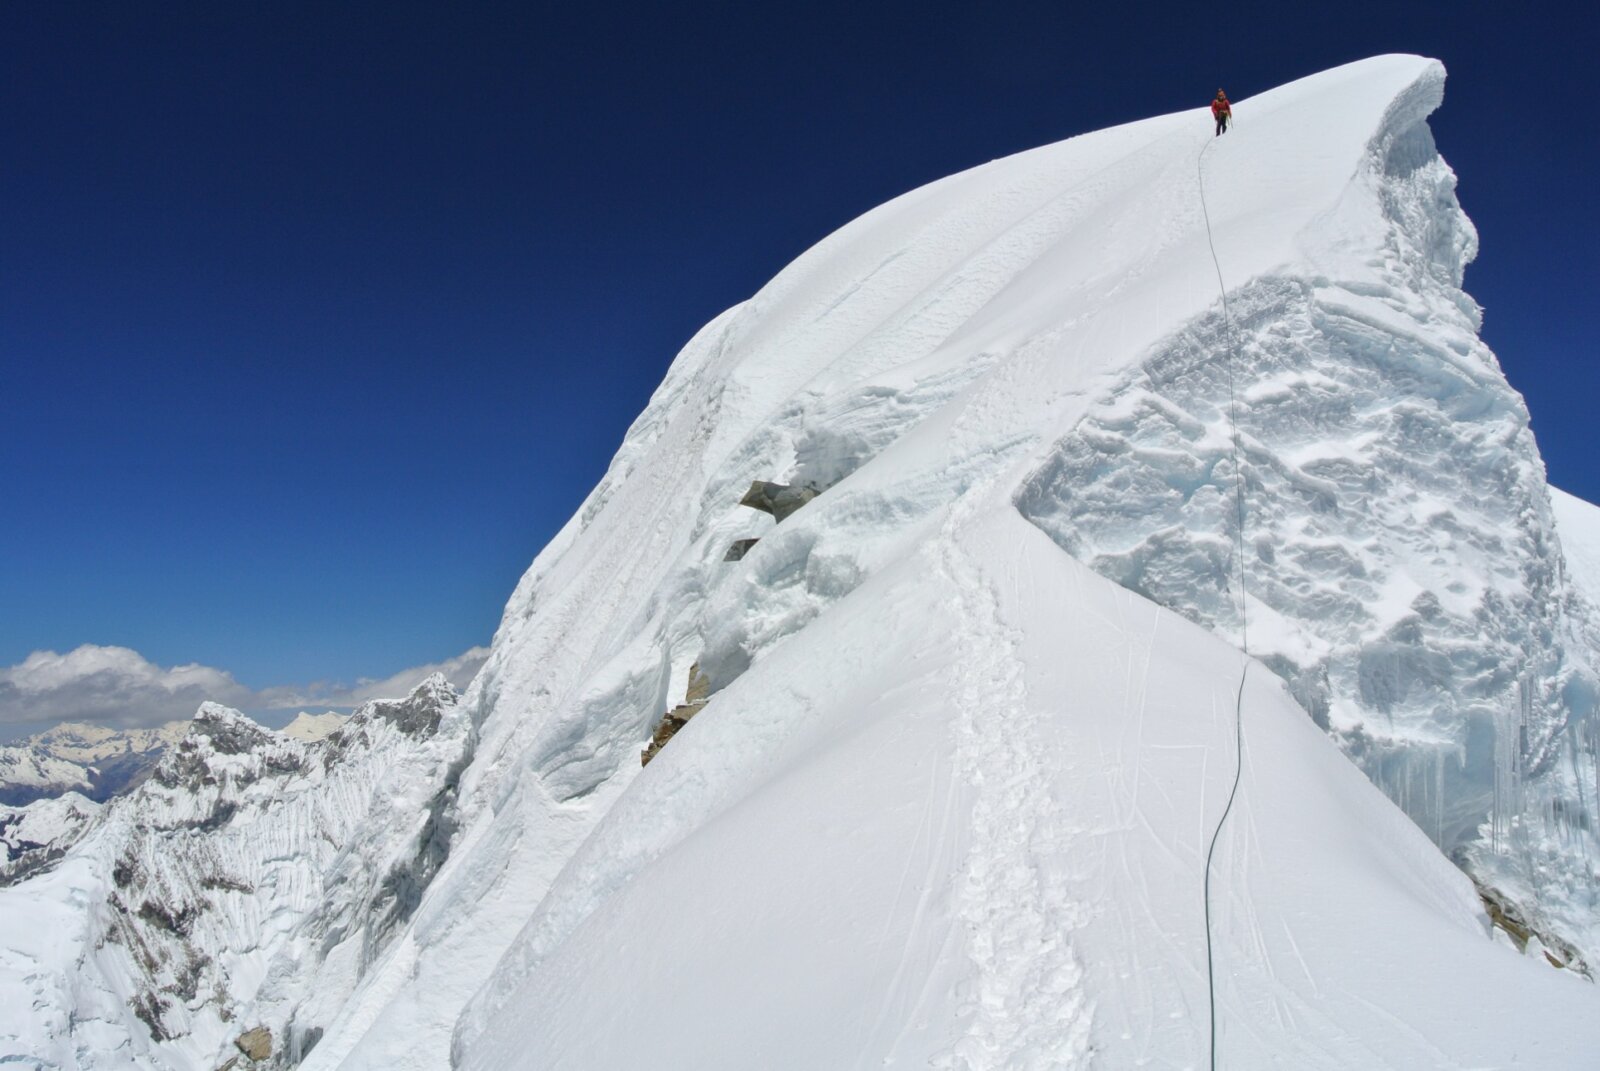 A ridge to the summit of Artesonraju